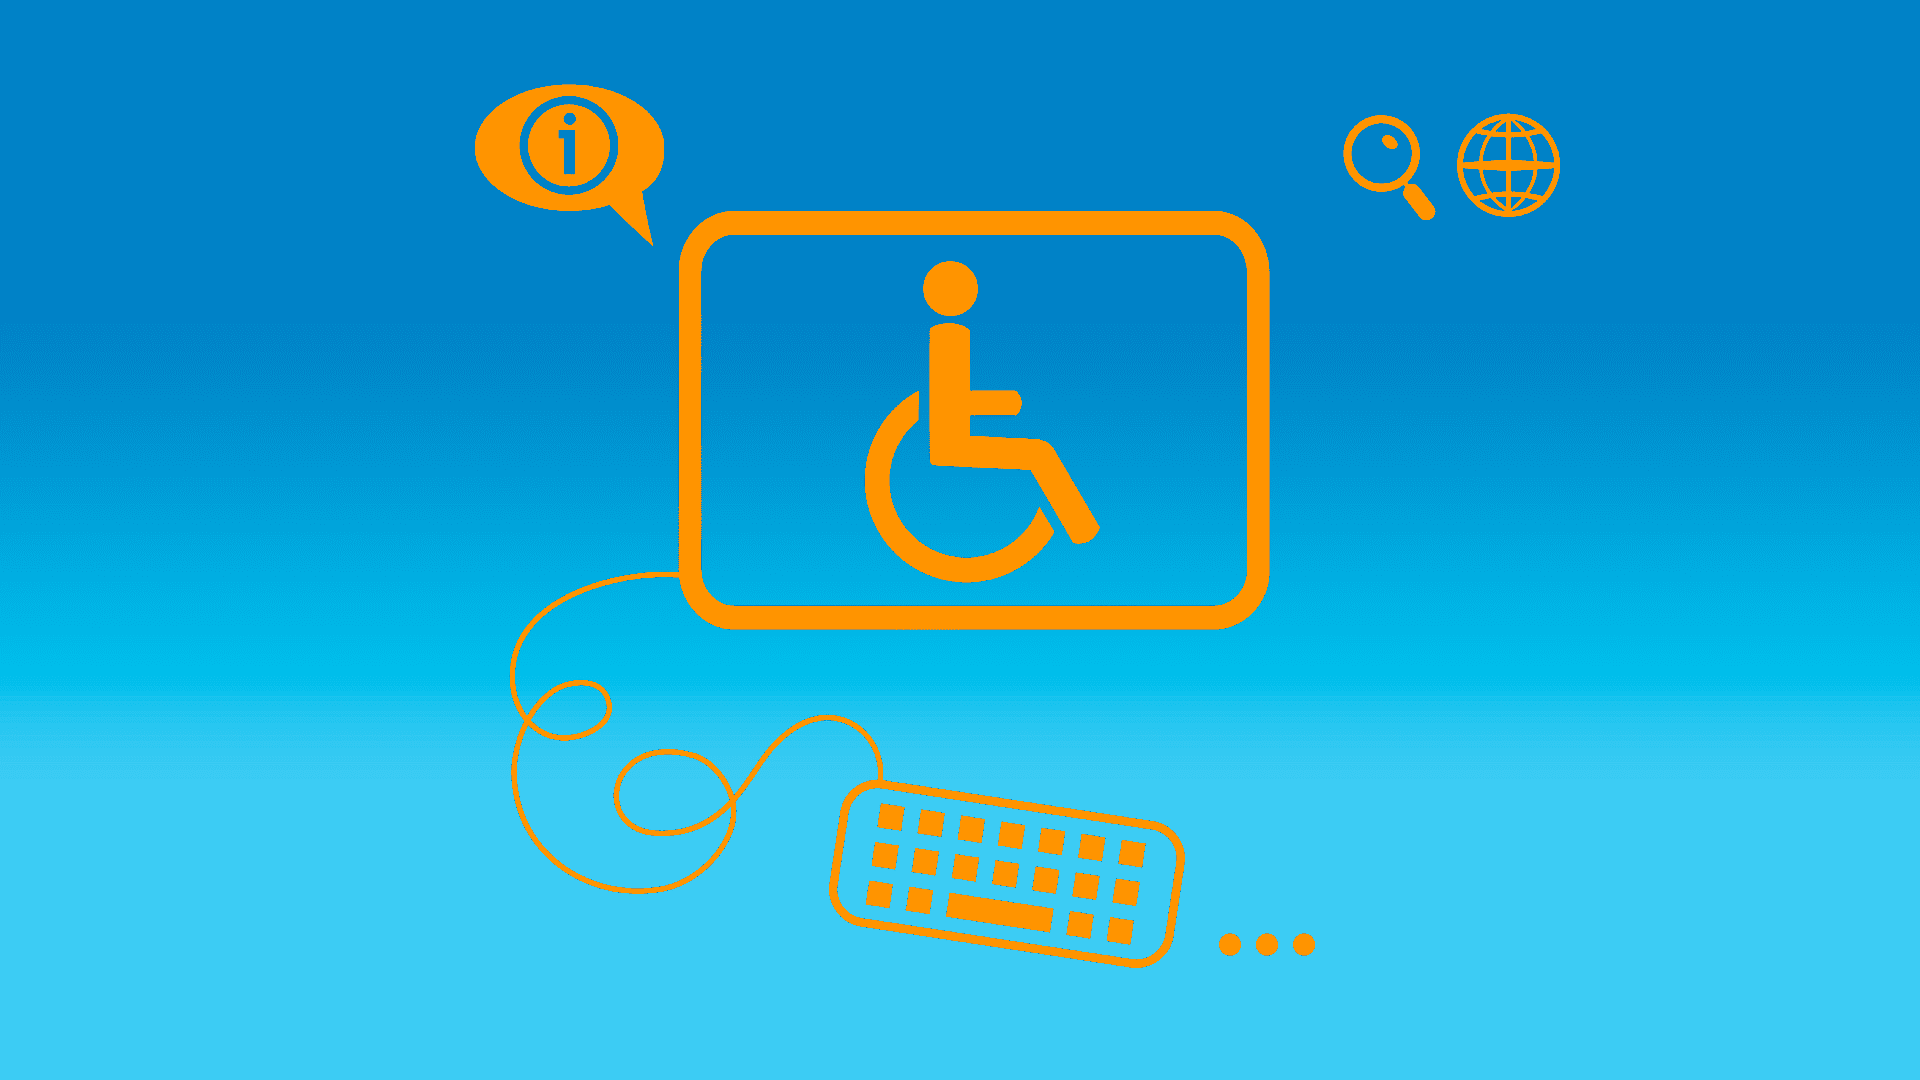 Arte em fundo azul e ícones laranja, ilustrando pauta sobre treinamentos de acessibilidade digital a profissionais de TI. Descrição na legenda, abaixo.